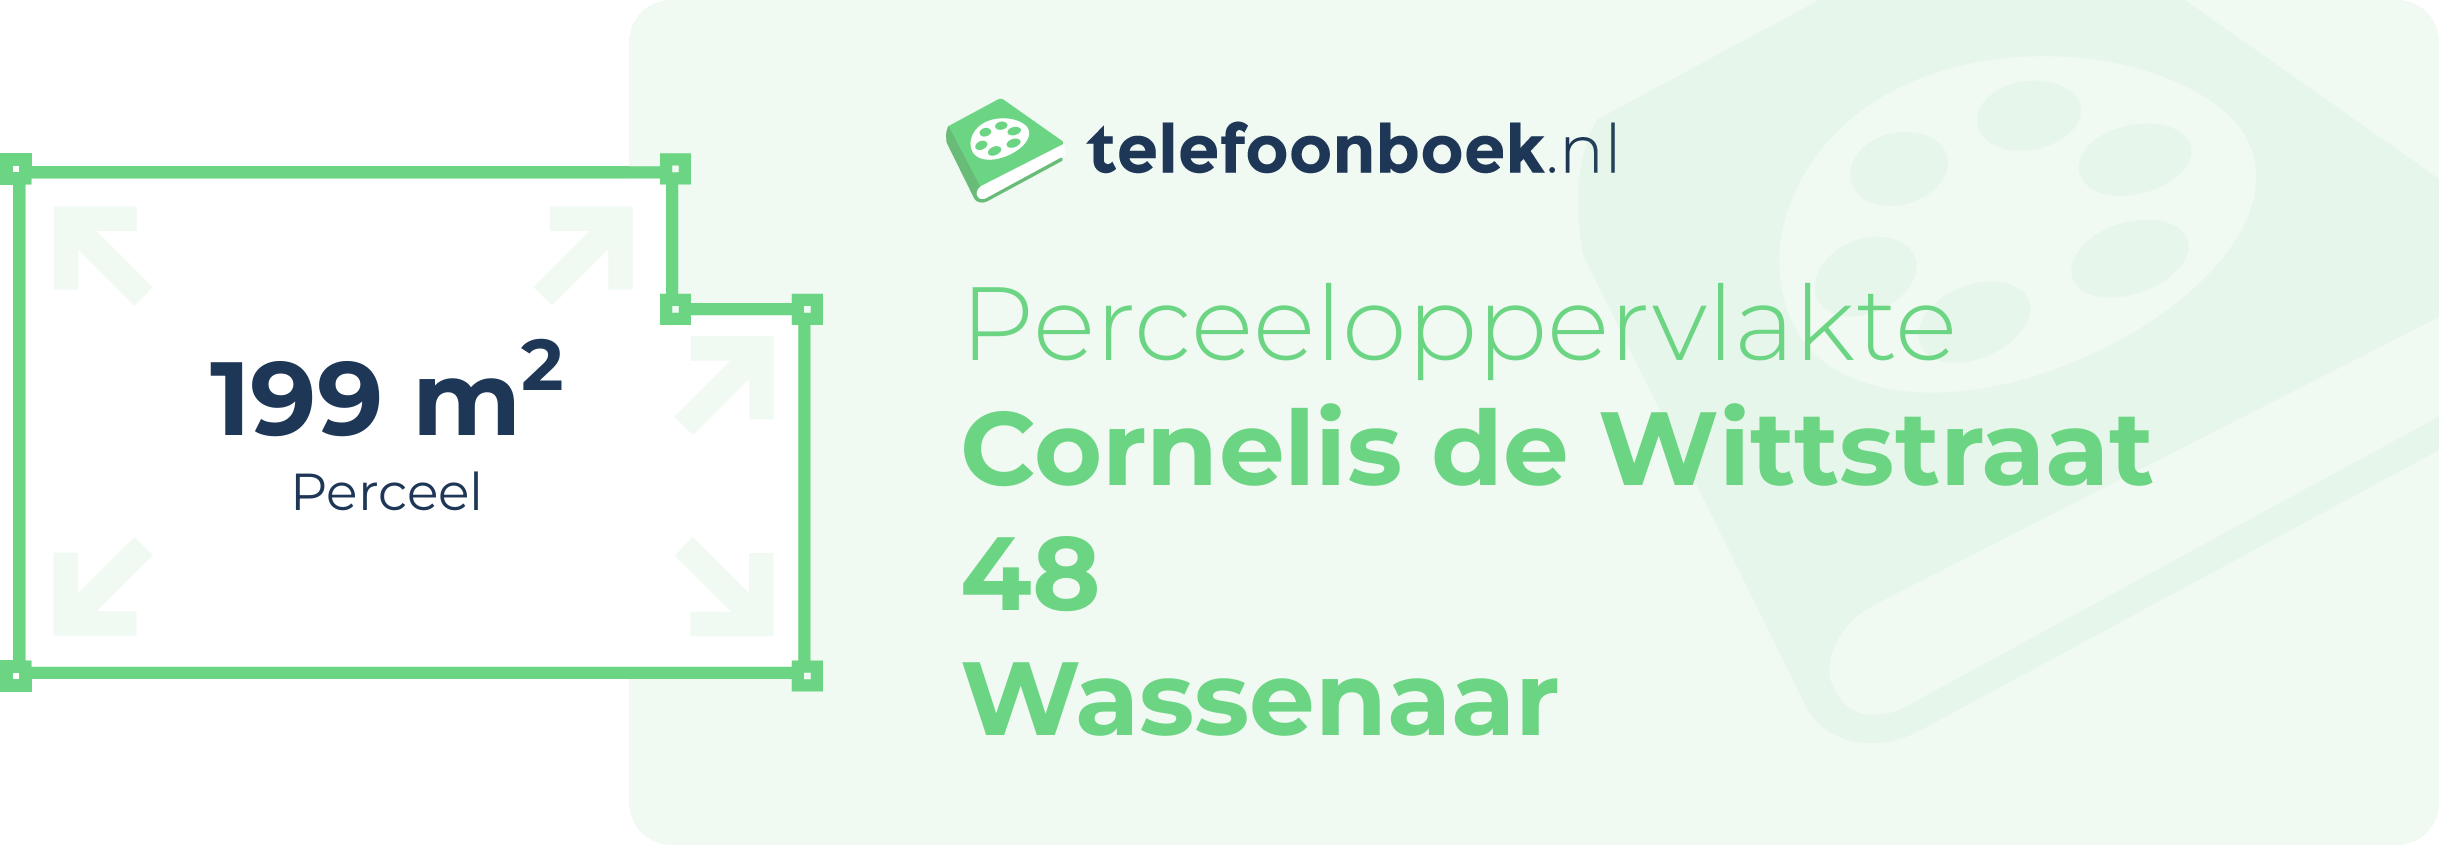 Perceeloppervlakte Cornelis De Wittstraat 48 Wassenaar